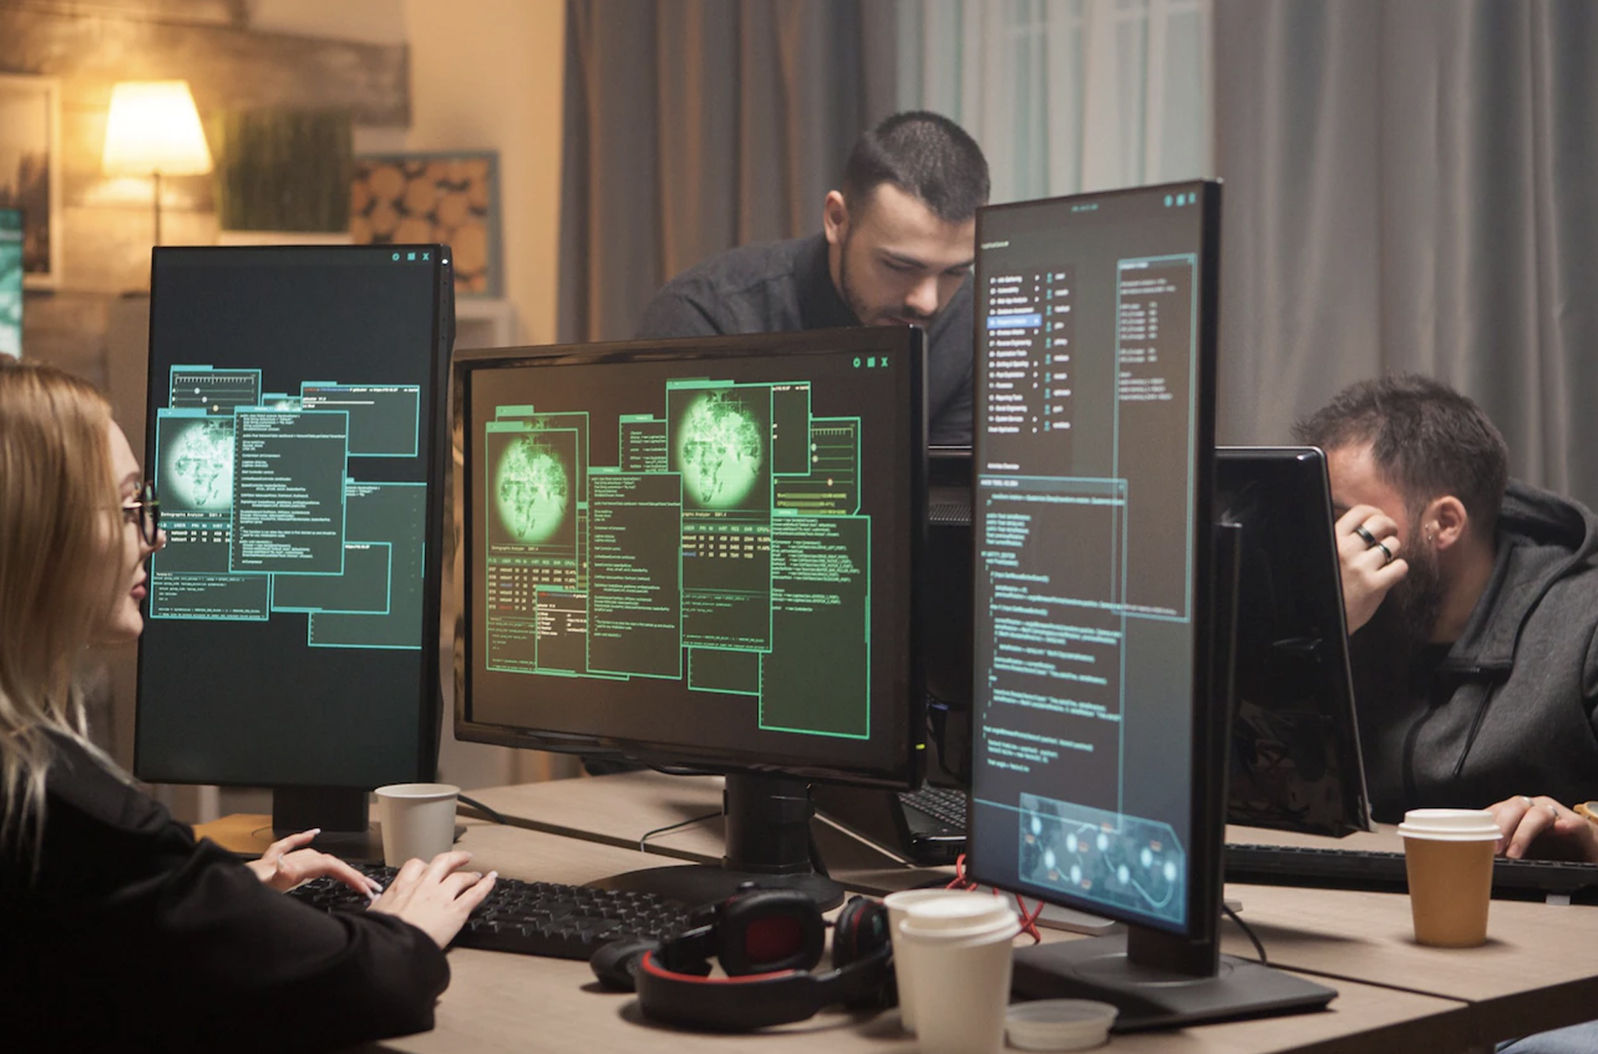 engenharia e desenvolvimento: a imagem mostra dois homens e uma mulher desenvolvendo uma estratégia digital e ela está com três telas de computador abertas na frete dela com um code